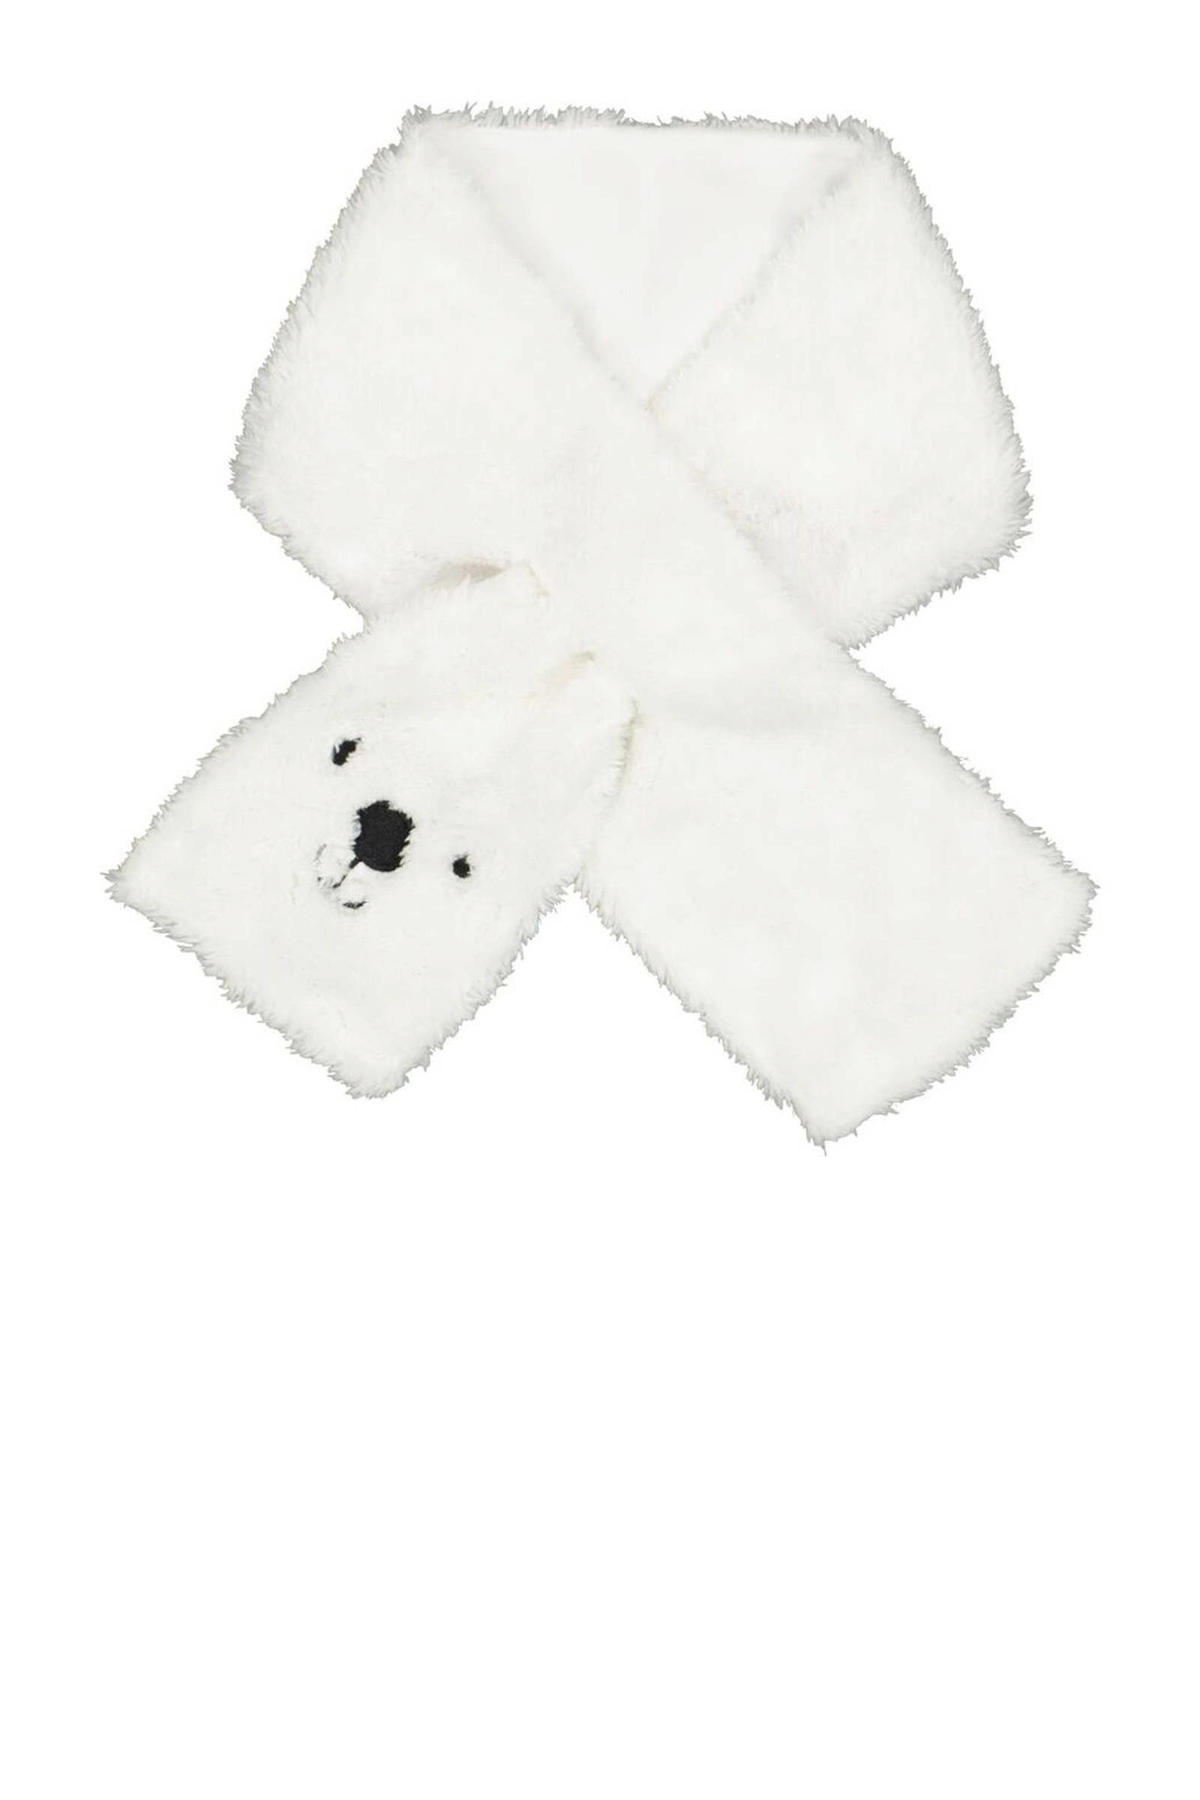 overhead Dubbelzinnig Perforeren HEMA baby sjaal ijsbeer wit kopen? | Morgen in huis | wehkamp